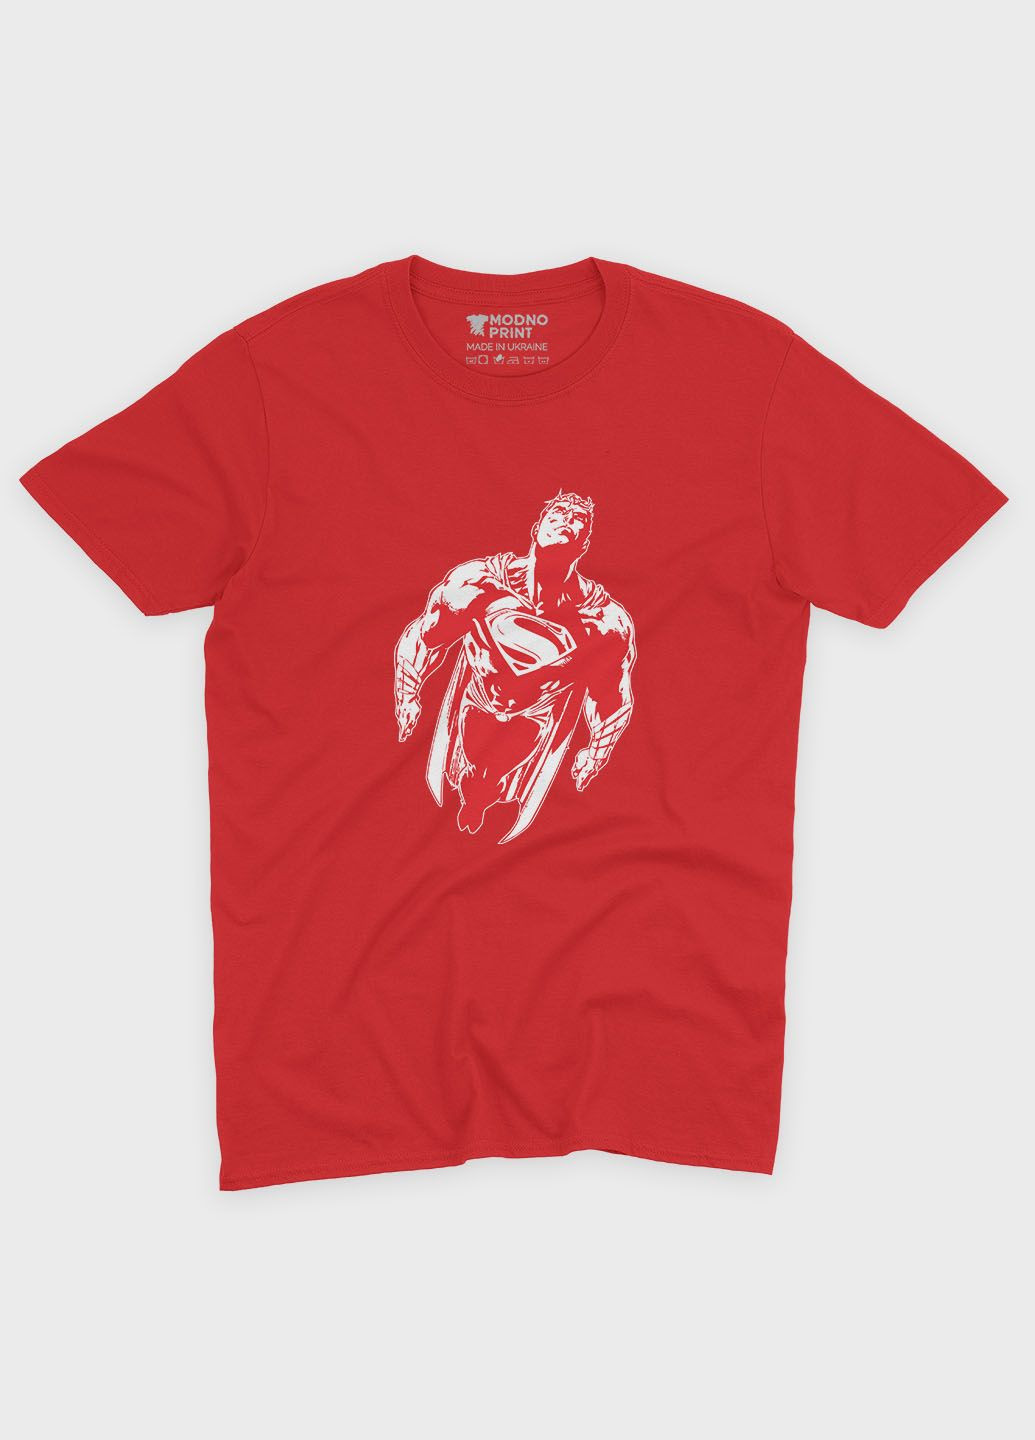 Красная демисезонная футболка для девочки с принтом супергероя - супермэн (ts001-1-sre-006-009-001-g) Modno